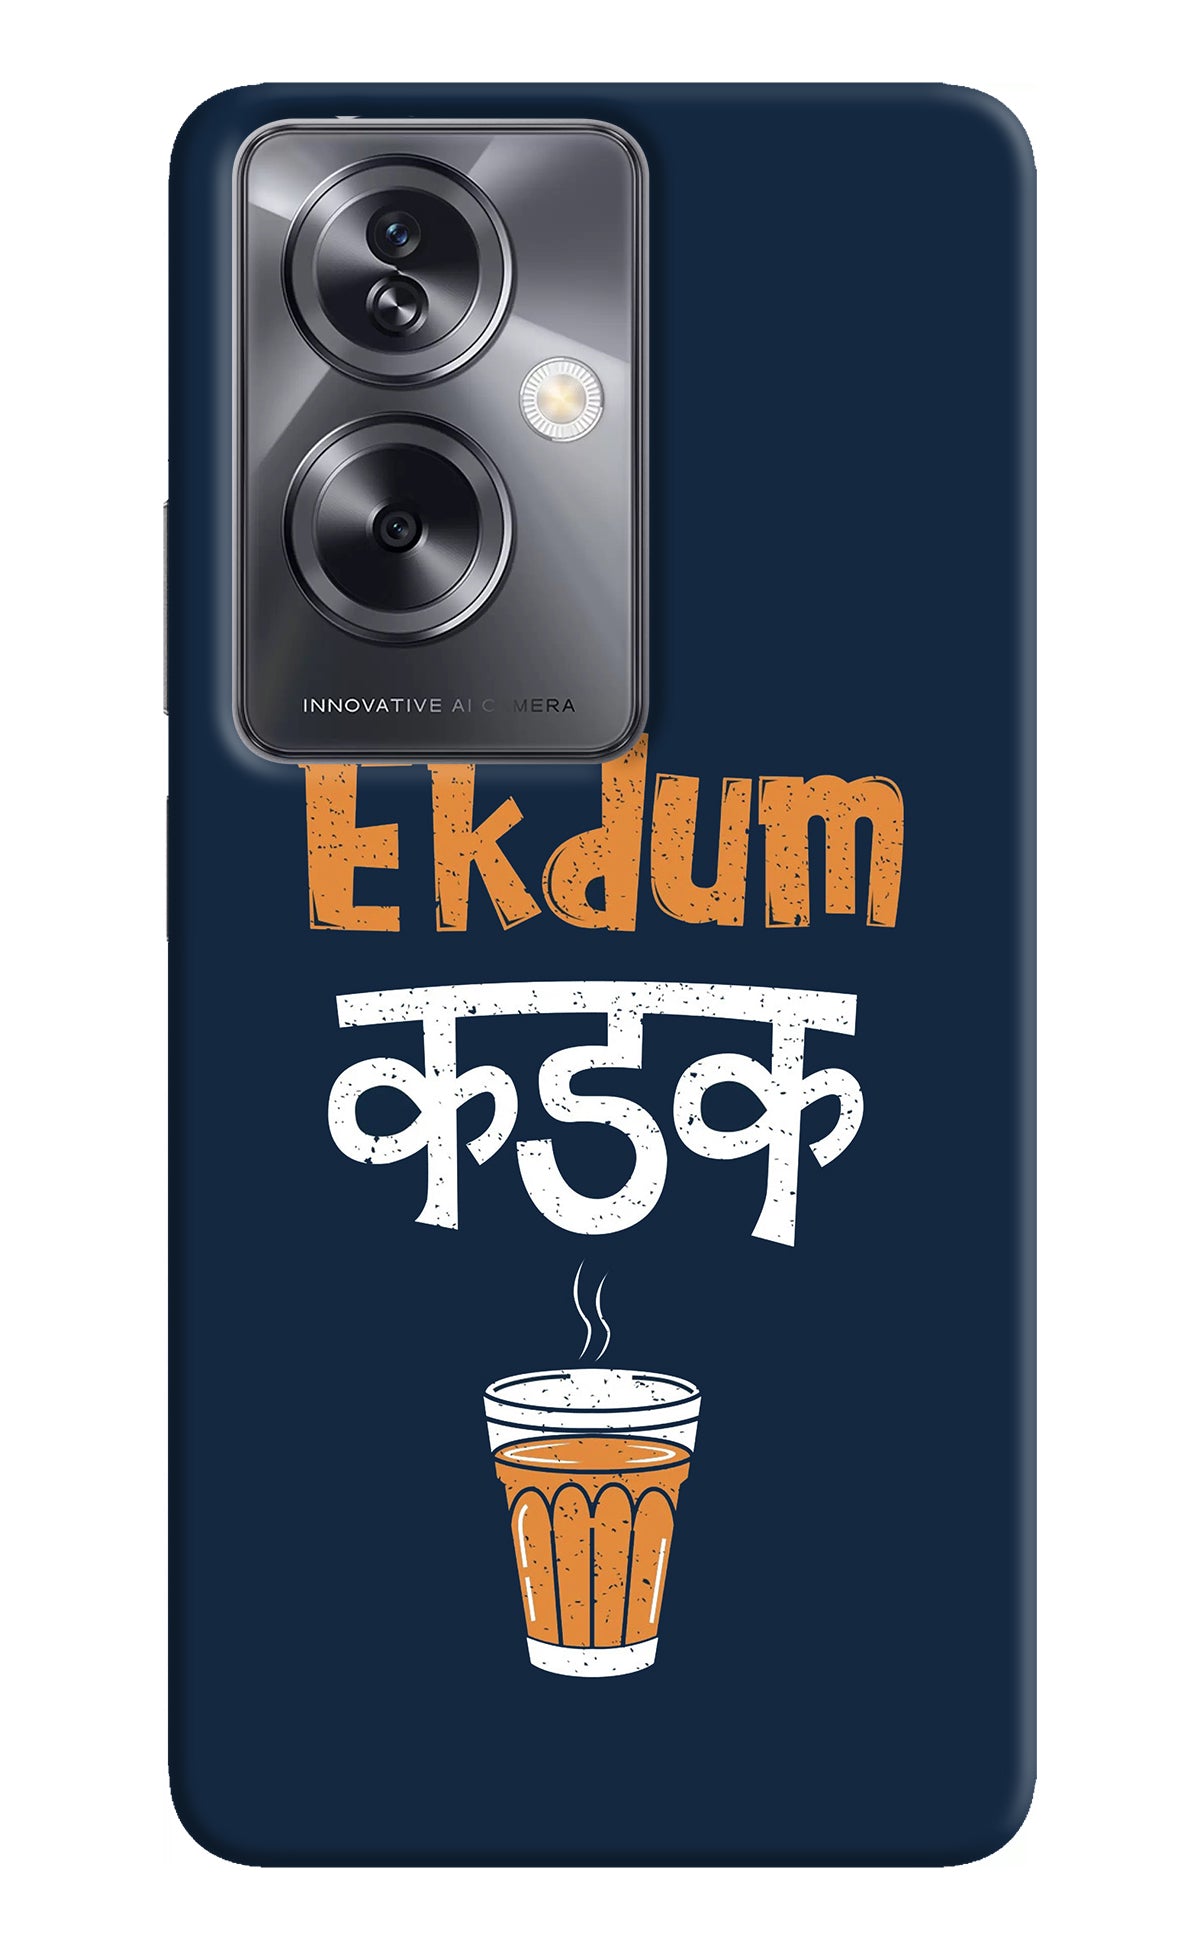 Ekdum Kadak Chai Oppo A79 5G Back Cover